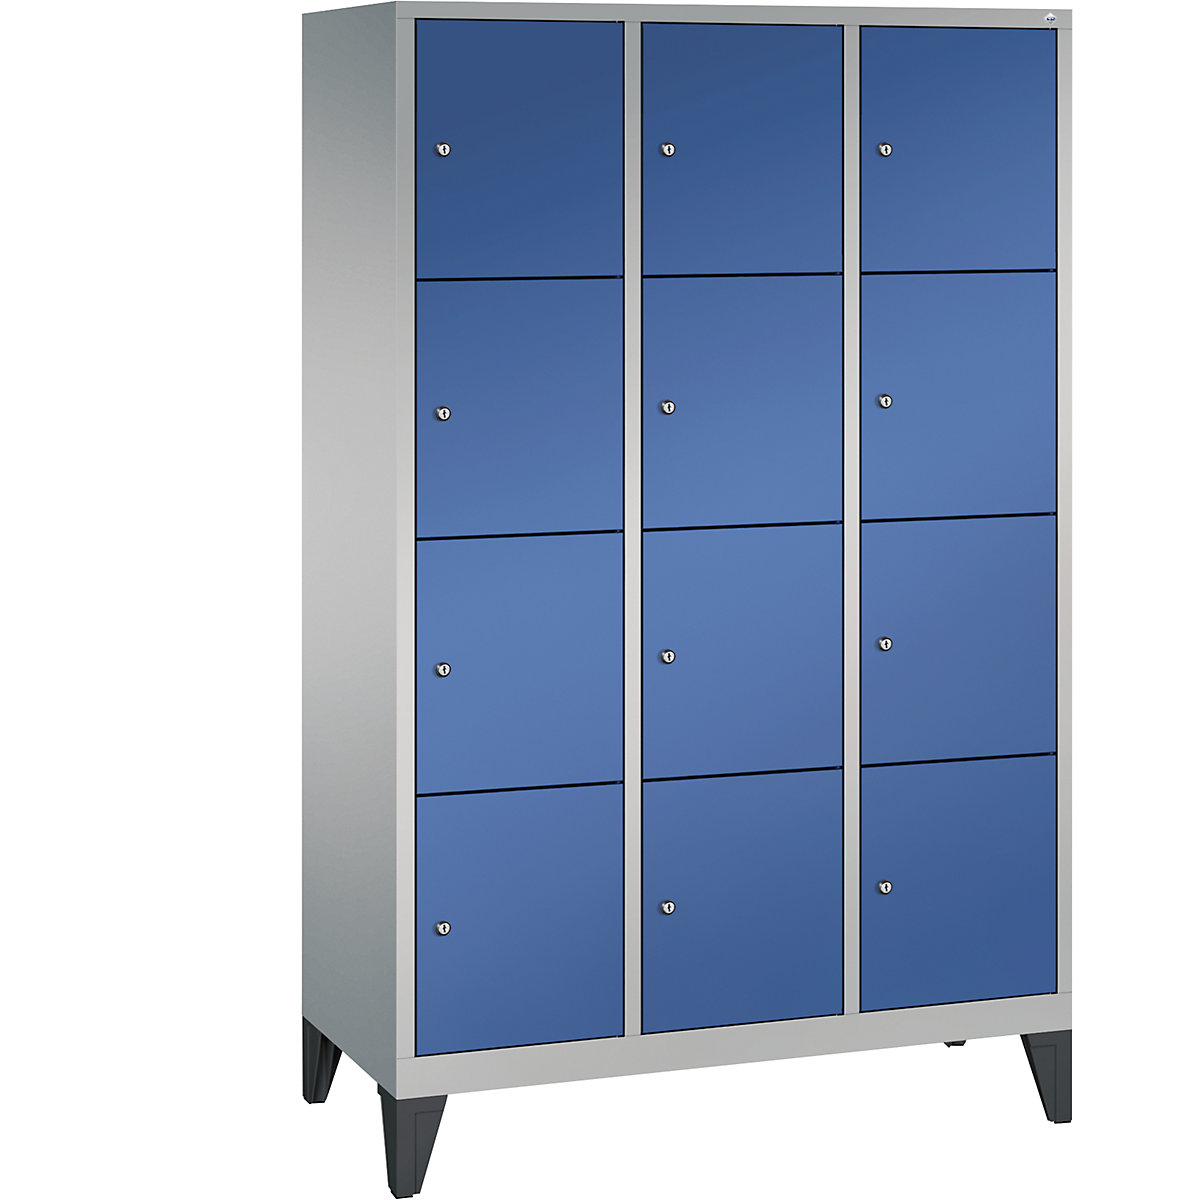 CLASSIC locker unit with feet – C+P, 3 compartments, 4 shelf compartments each, compartment width 400 mm, white aluminium / gentian blue-3